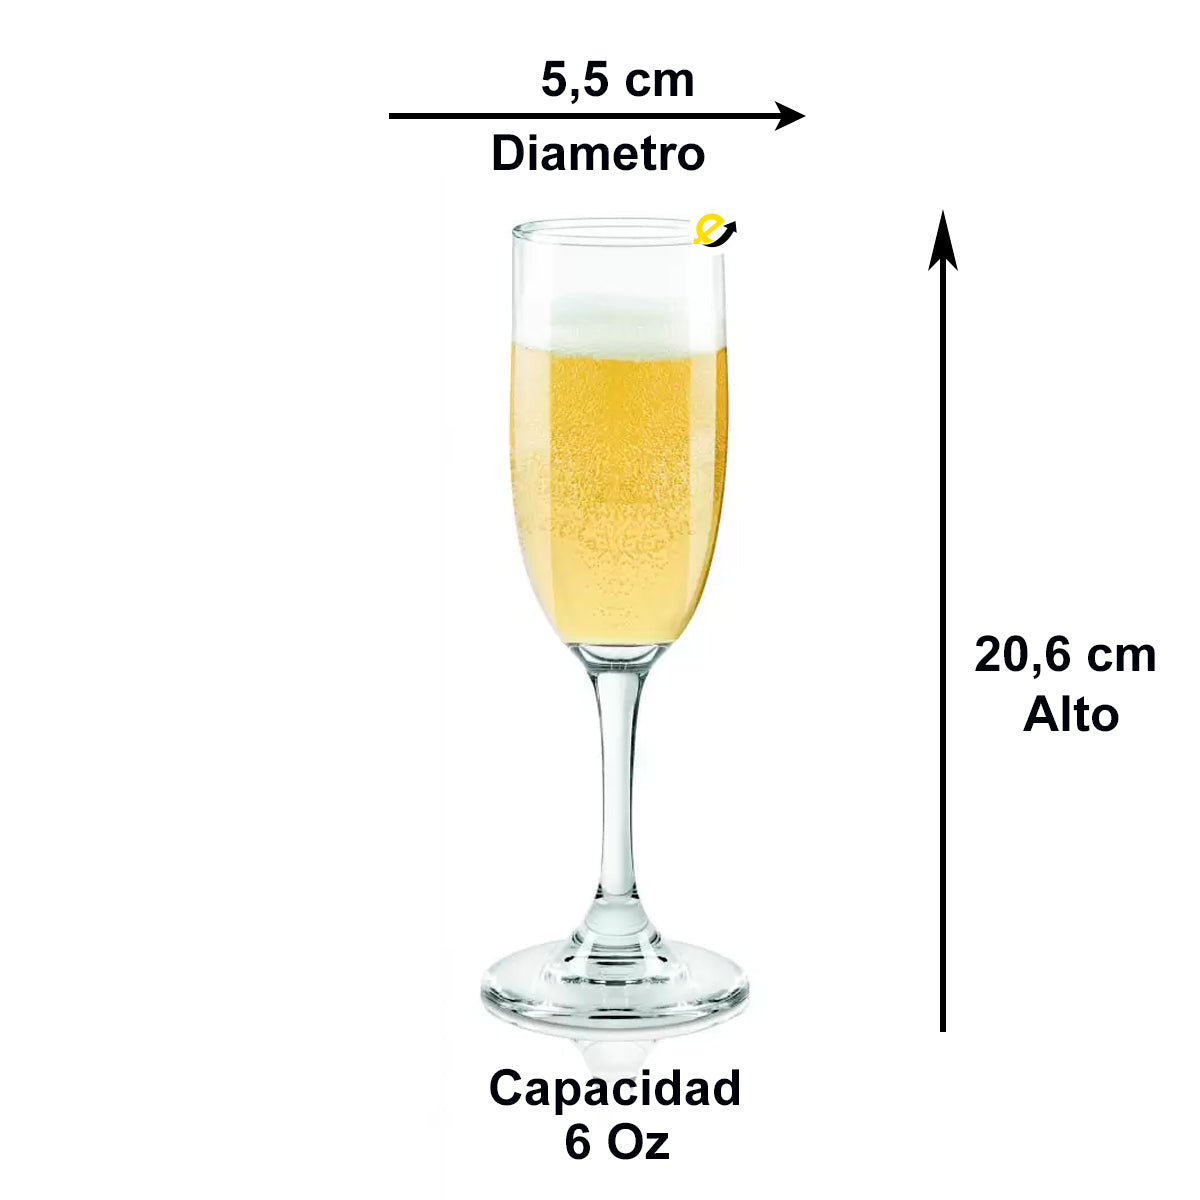 Copa para Champagne Aragon CRISTAR